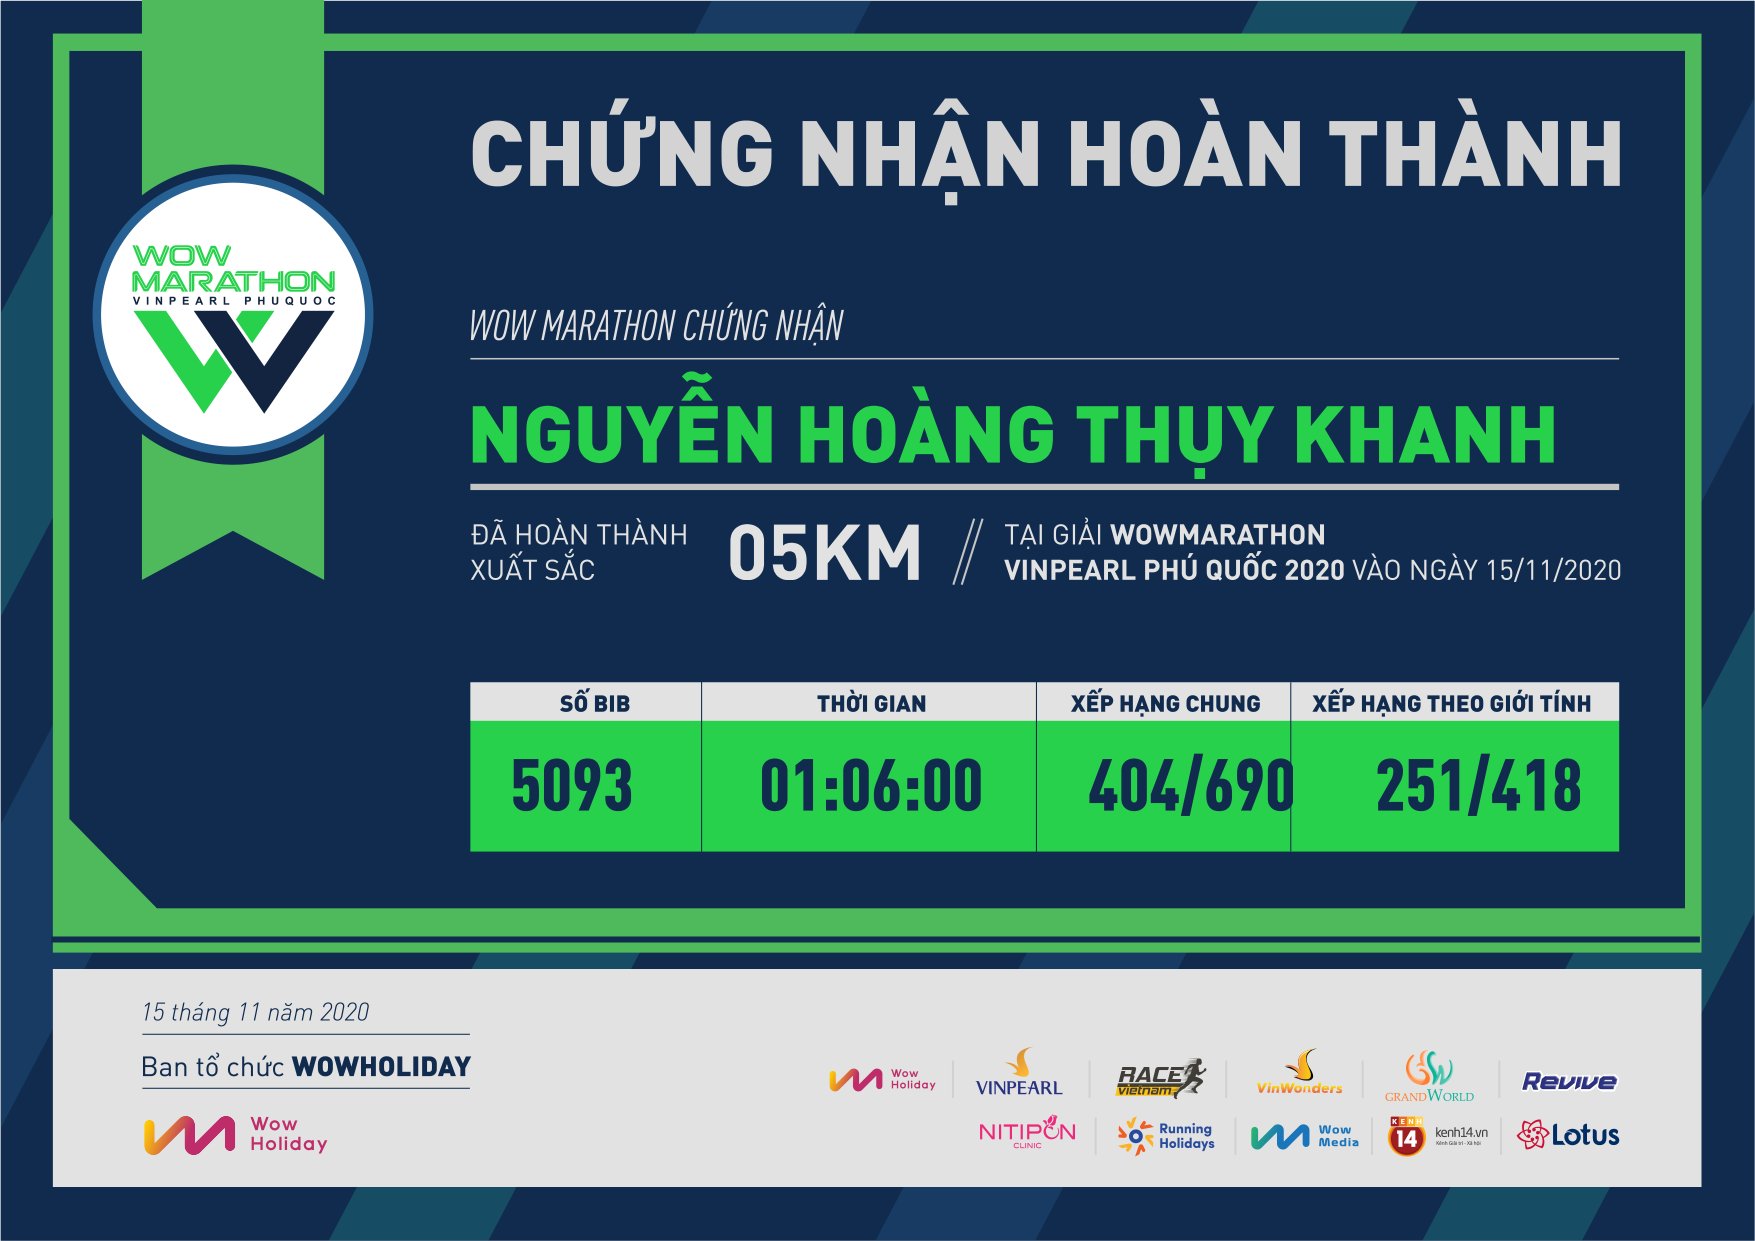 5093 - Nguyễn Hoàng Thụy Khanh